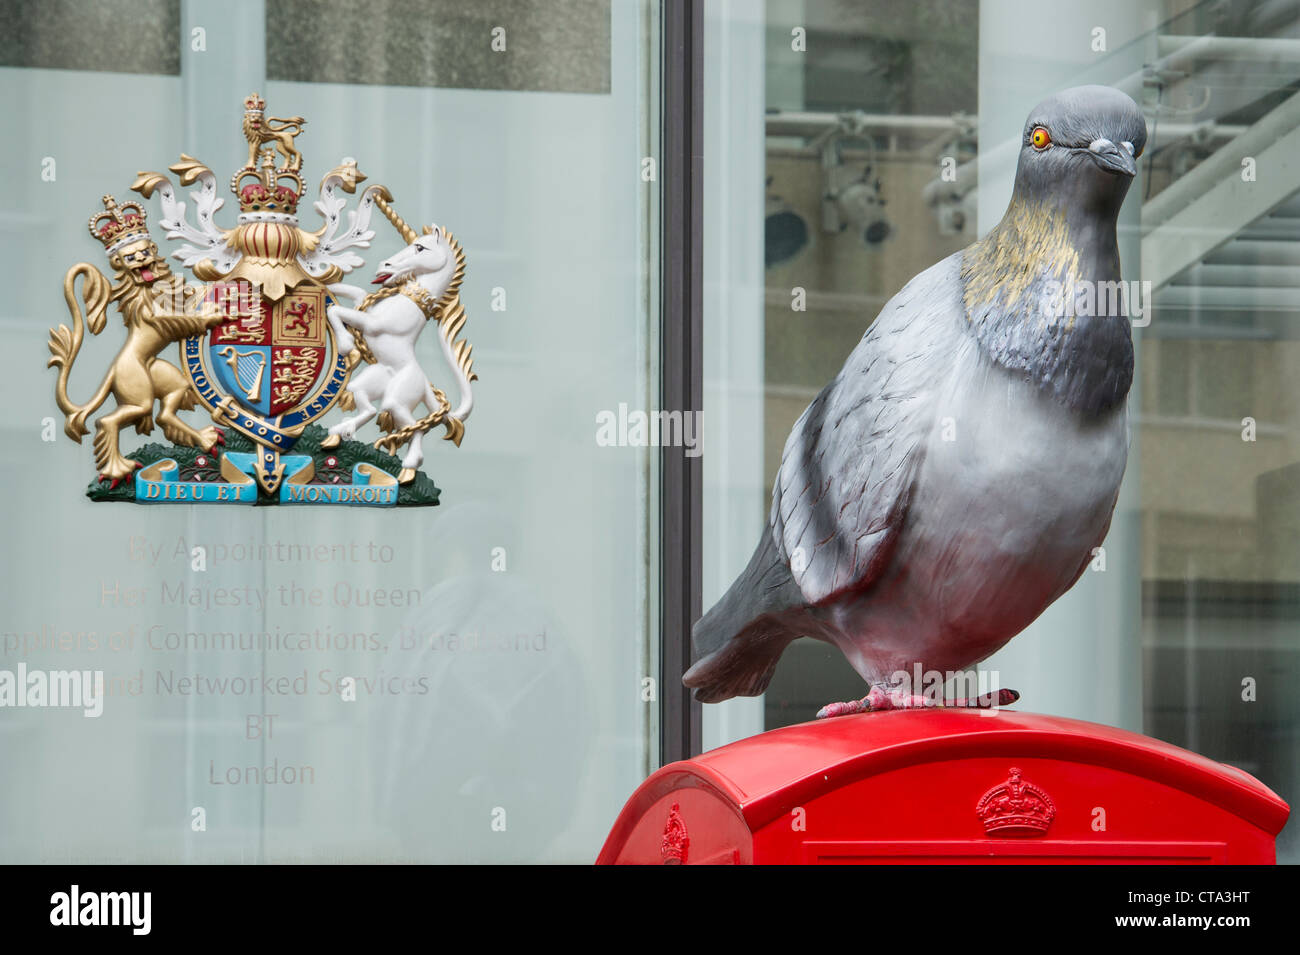 Arrêter le pigeon, Artbox BT BT extérieur siège mondial du Centre. Newgate Street, Londres Banque D'Images